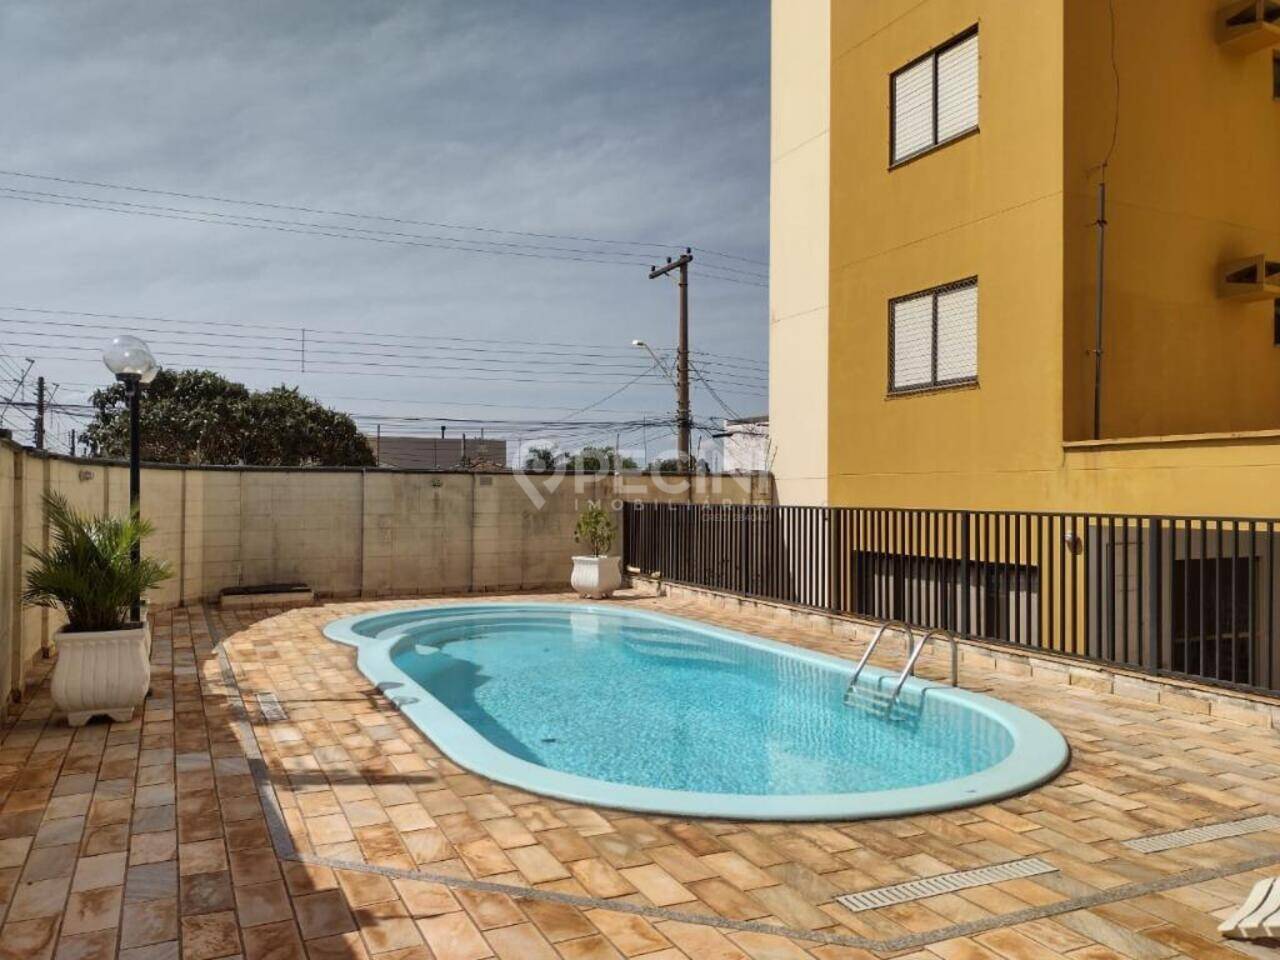 Apartamento à venda no centro de Rio Claro, edifício Maison Marseille - foto da piscina para lazer dos moradores